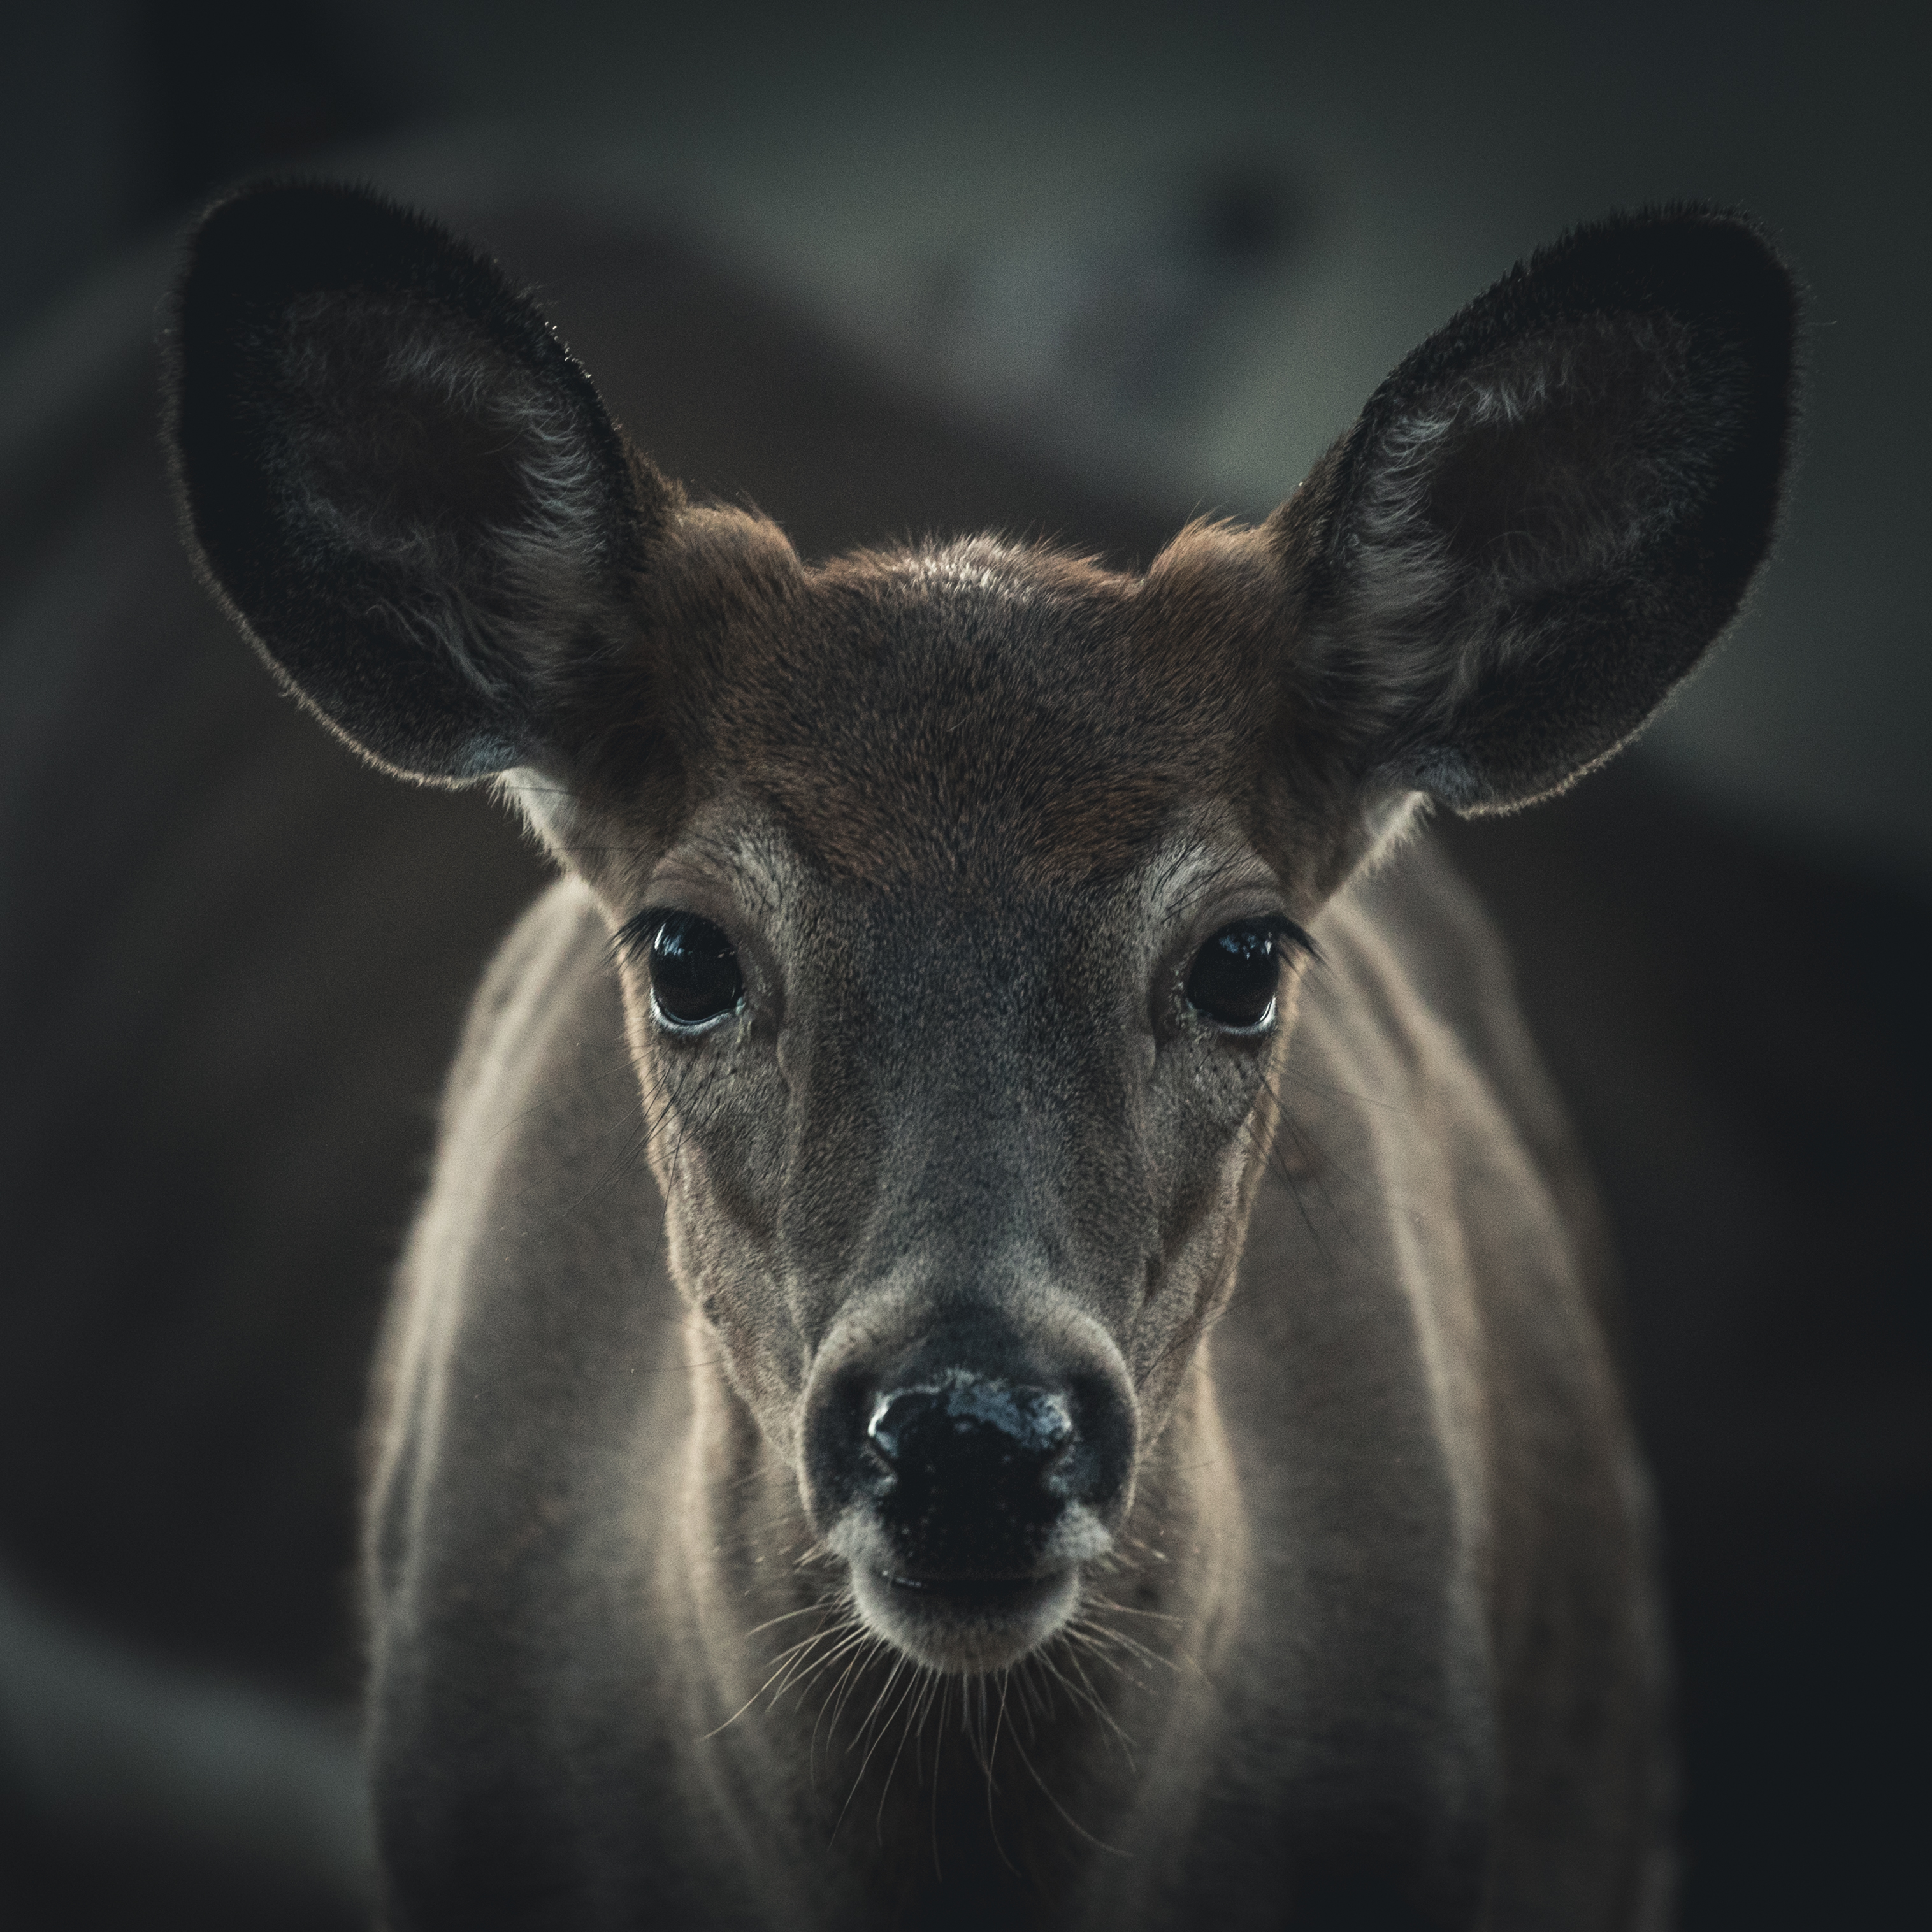 Wallpapers elk deer animals on the desktop